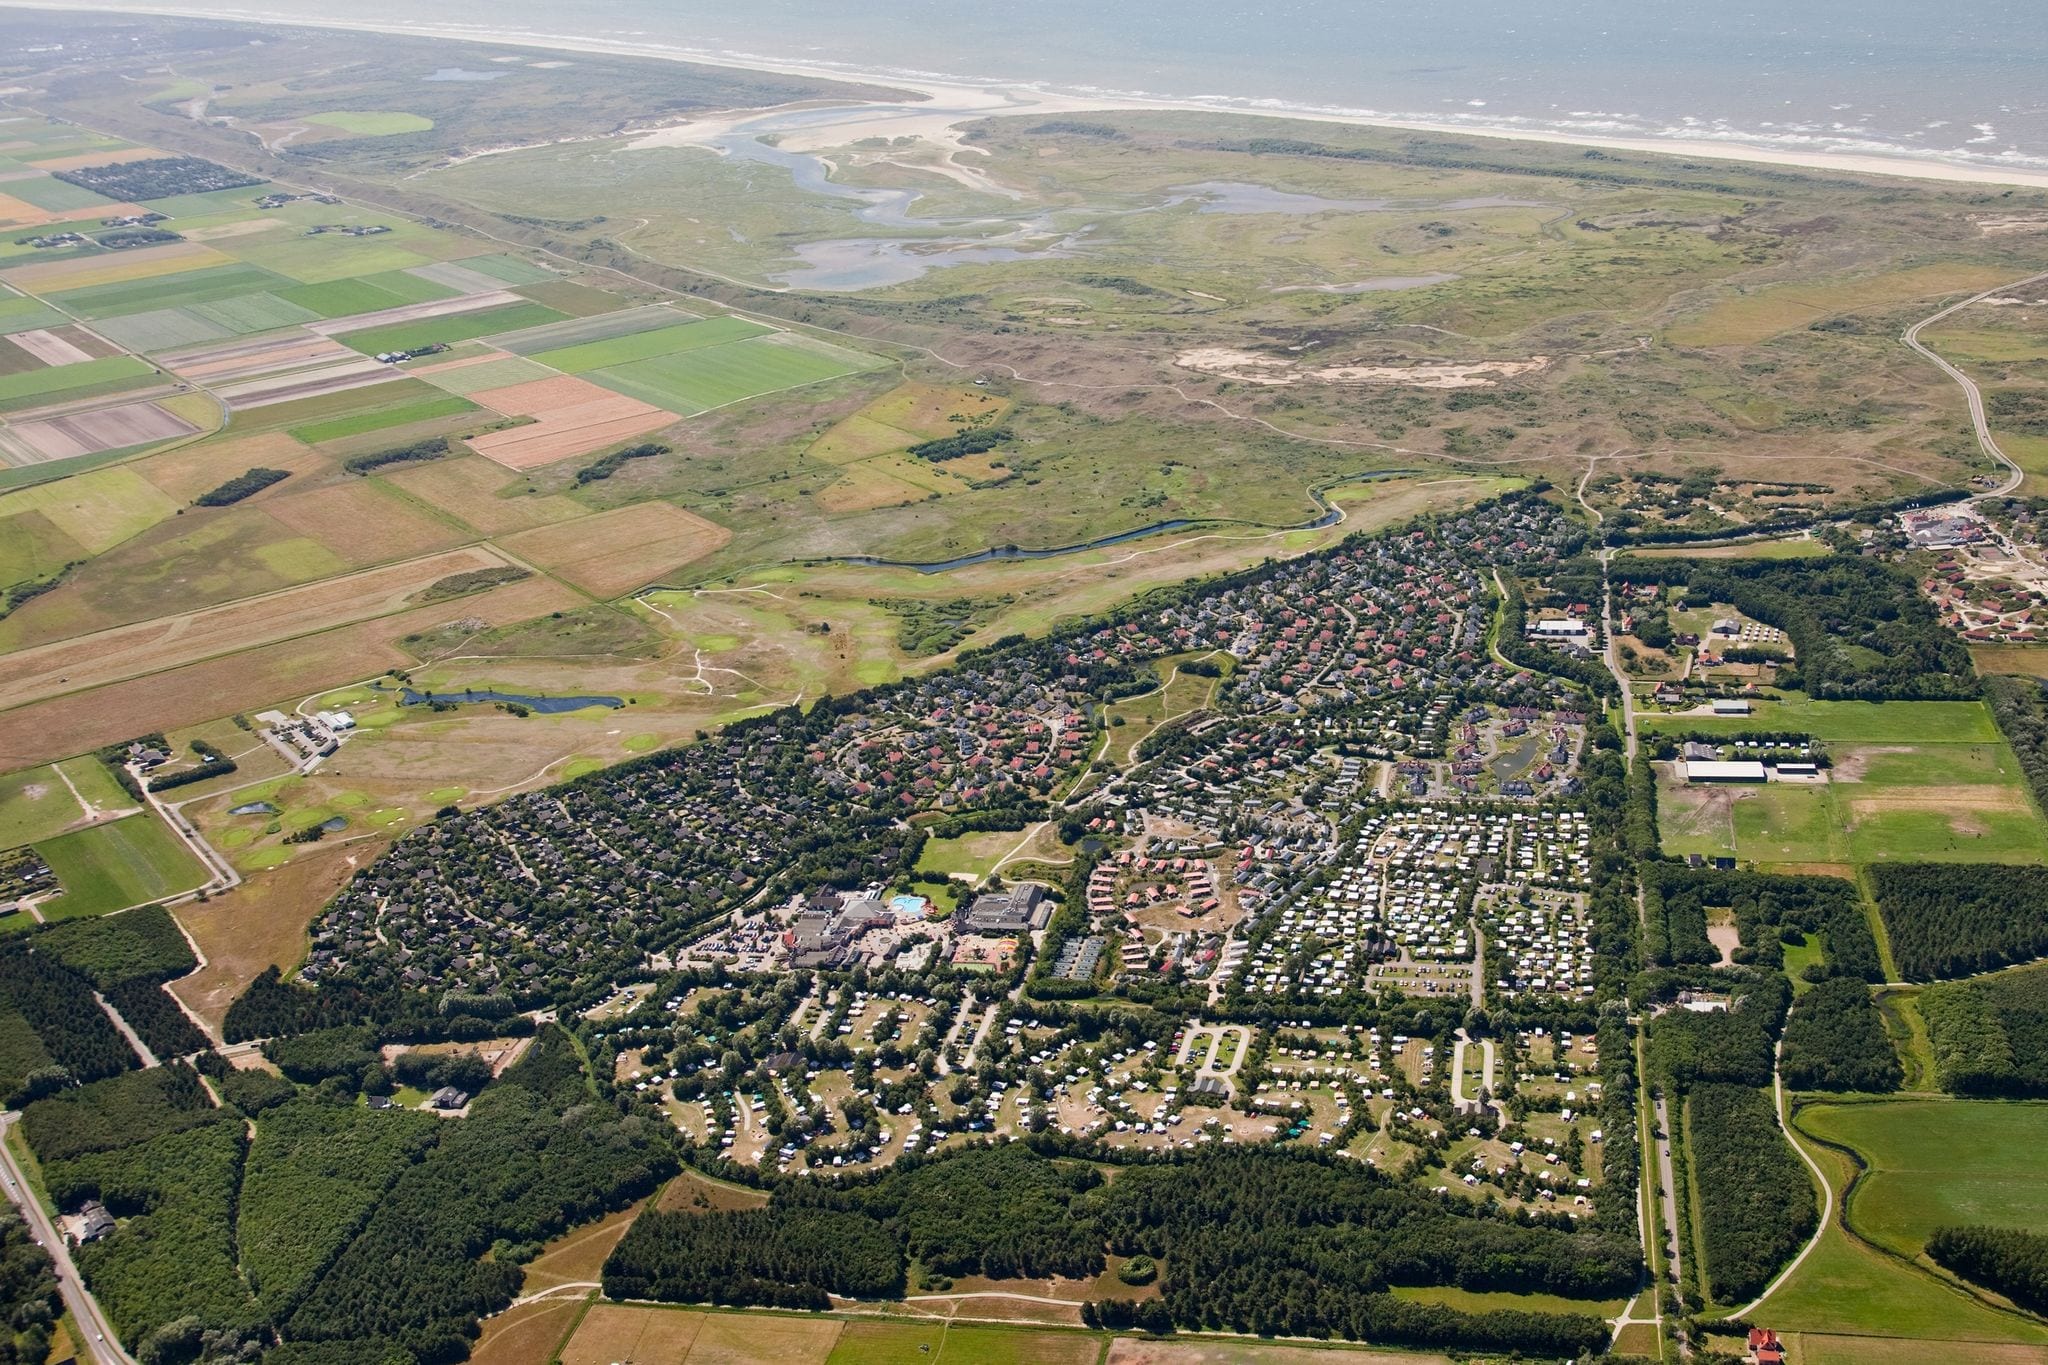 Ruim vakantiehuis met vaatwasser op Texel